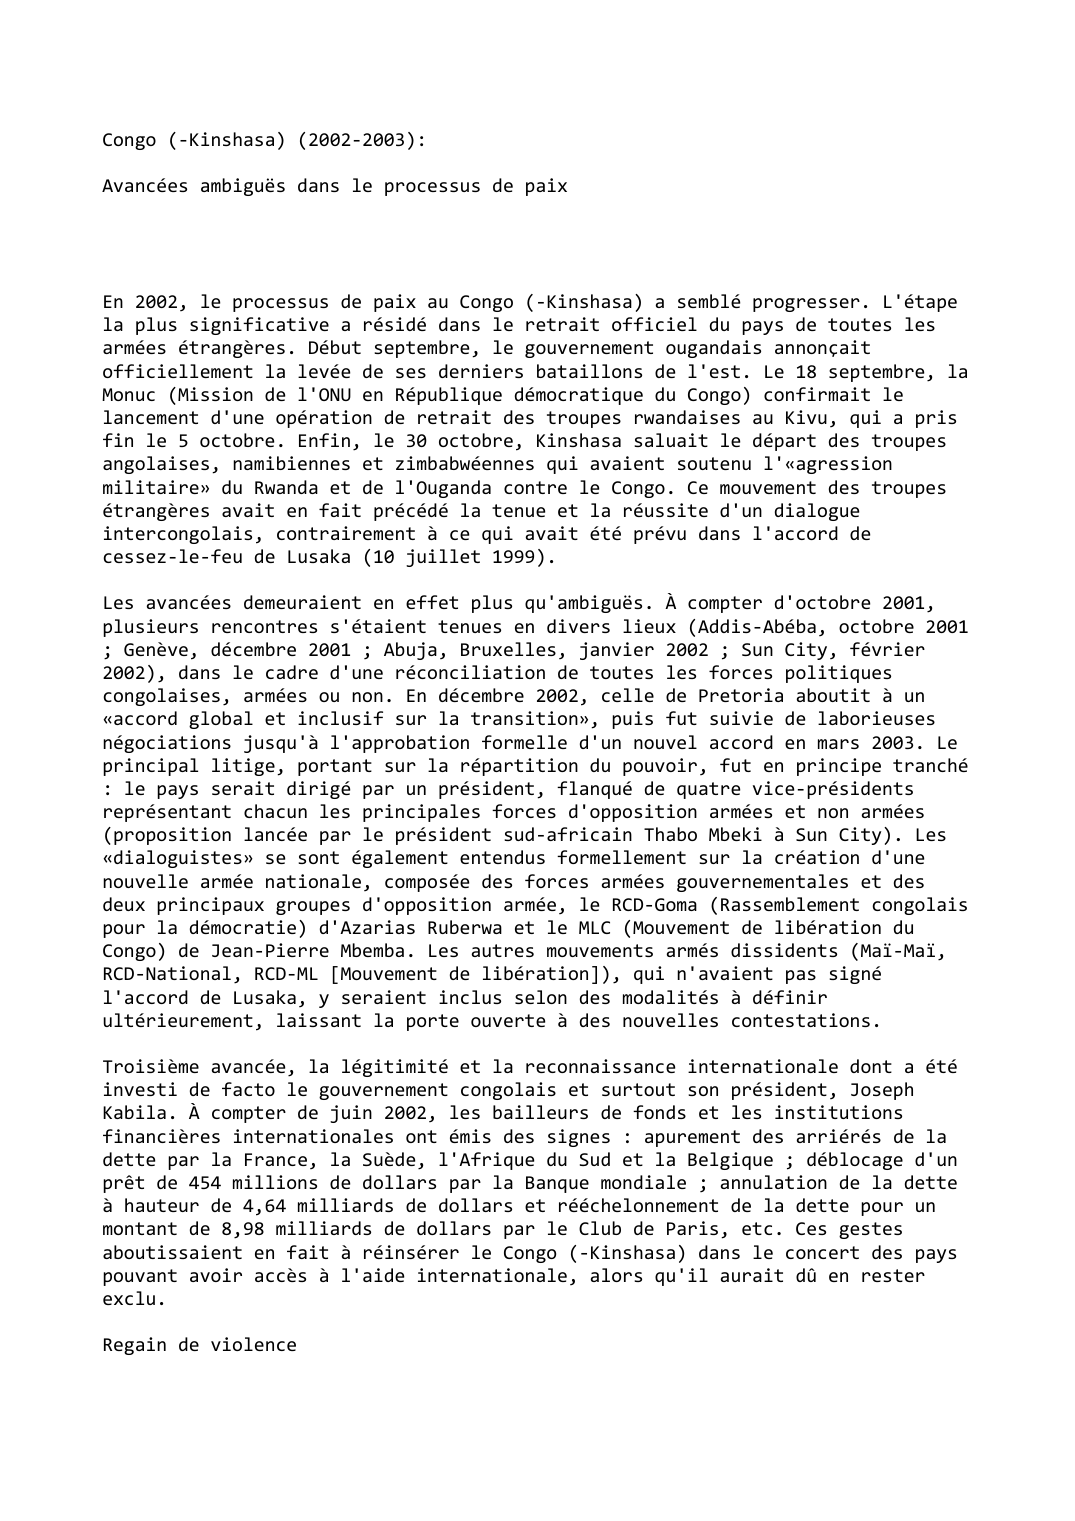 Prévisualisation du document Congo (-Kinshasa) (2002-2003):

Avancées ambiguës dans le processus de paix